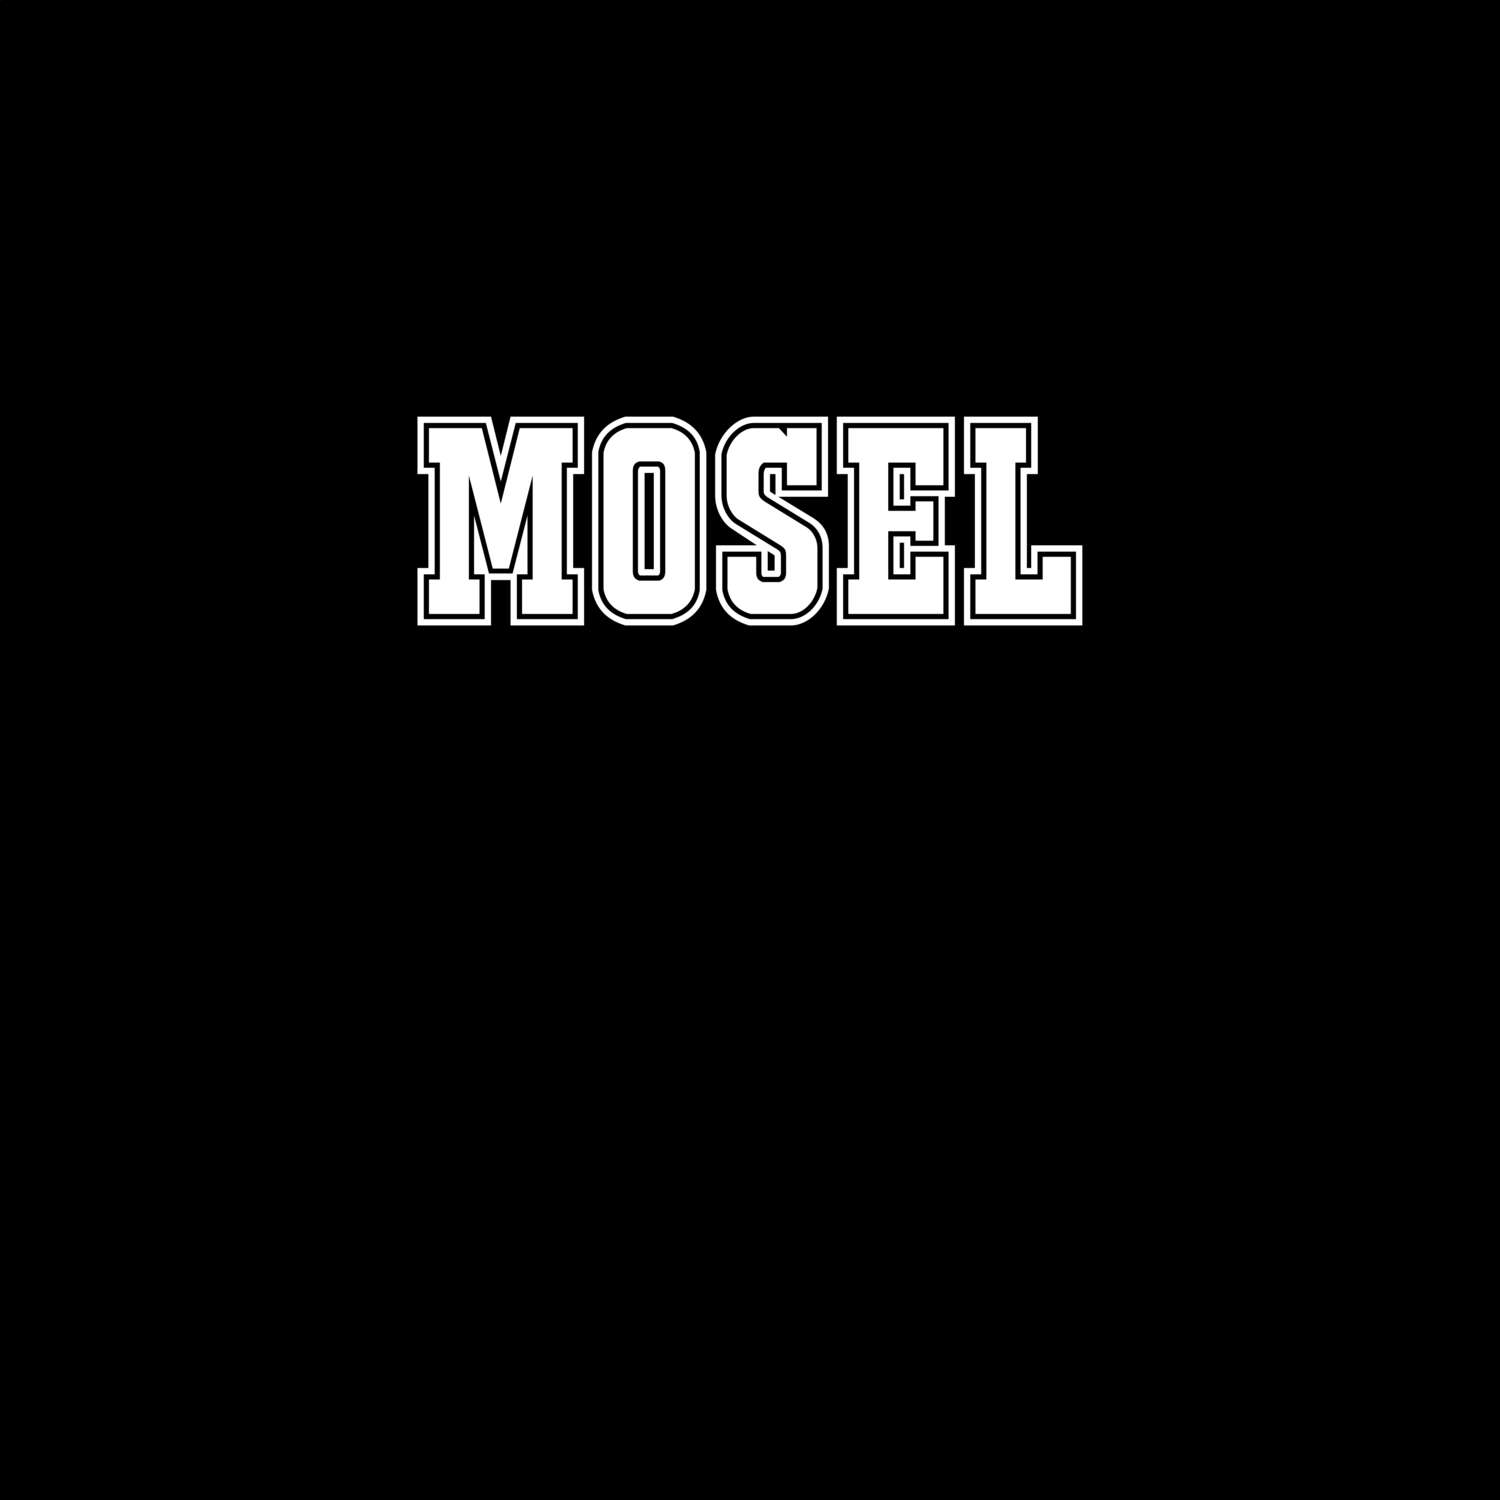 Mosel T-Shirt »Classic«